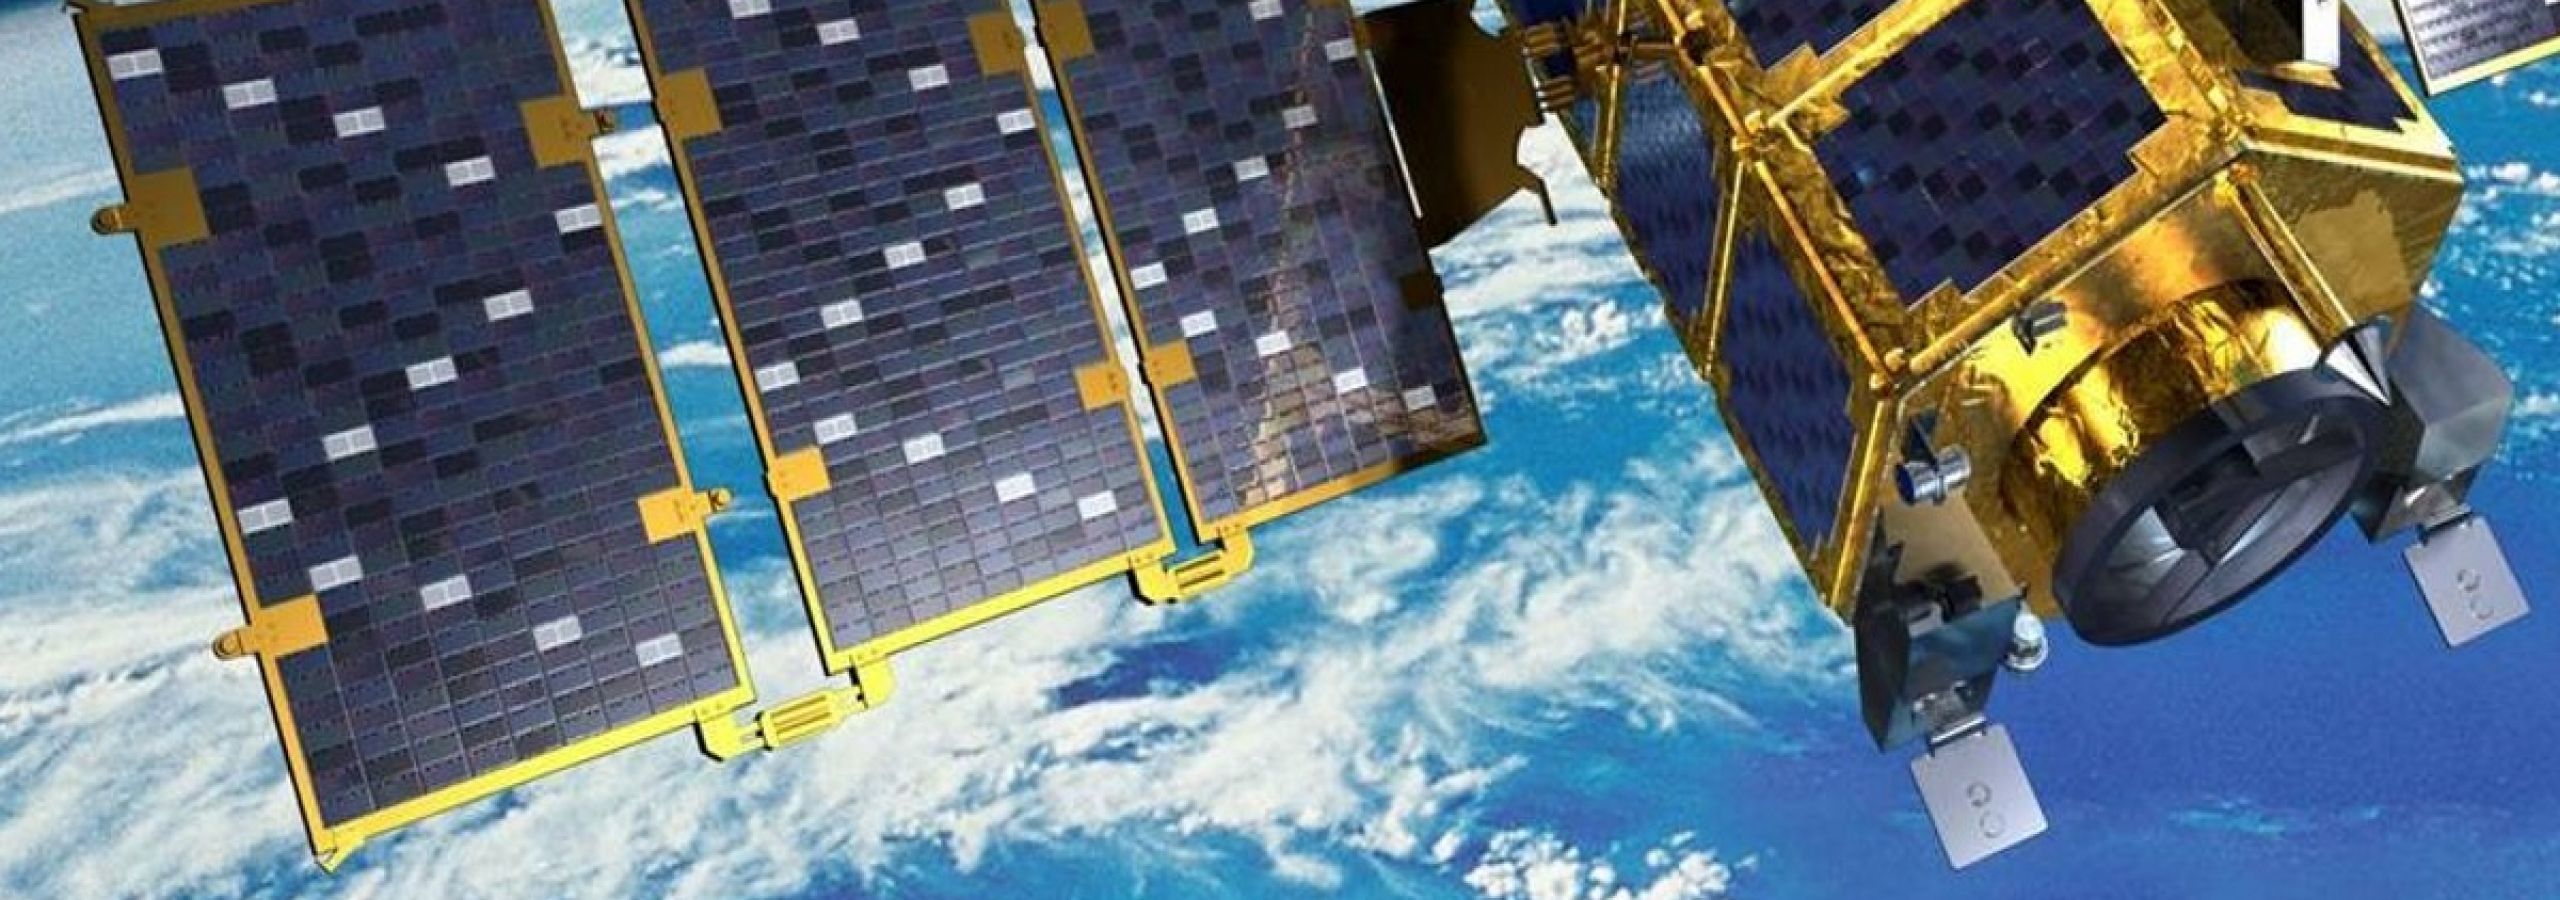 День спутников. Спутниковый мониторинг и навигация. День спутникового мониторинга. Космический аппарат KOMPSAT-6. Гелиос спутниковый мониторинг.